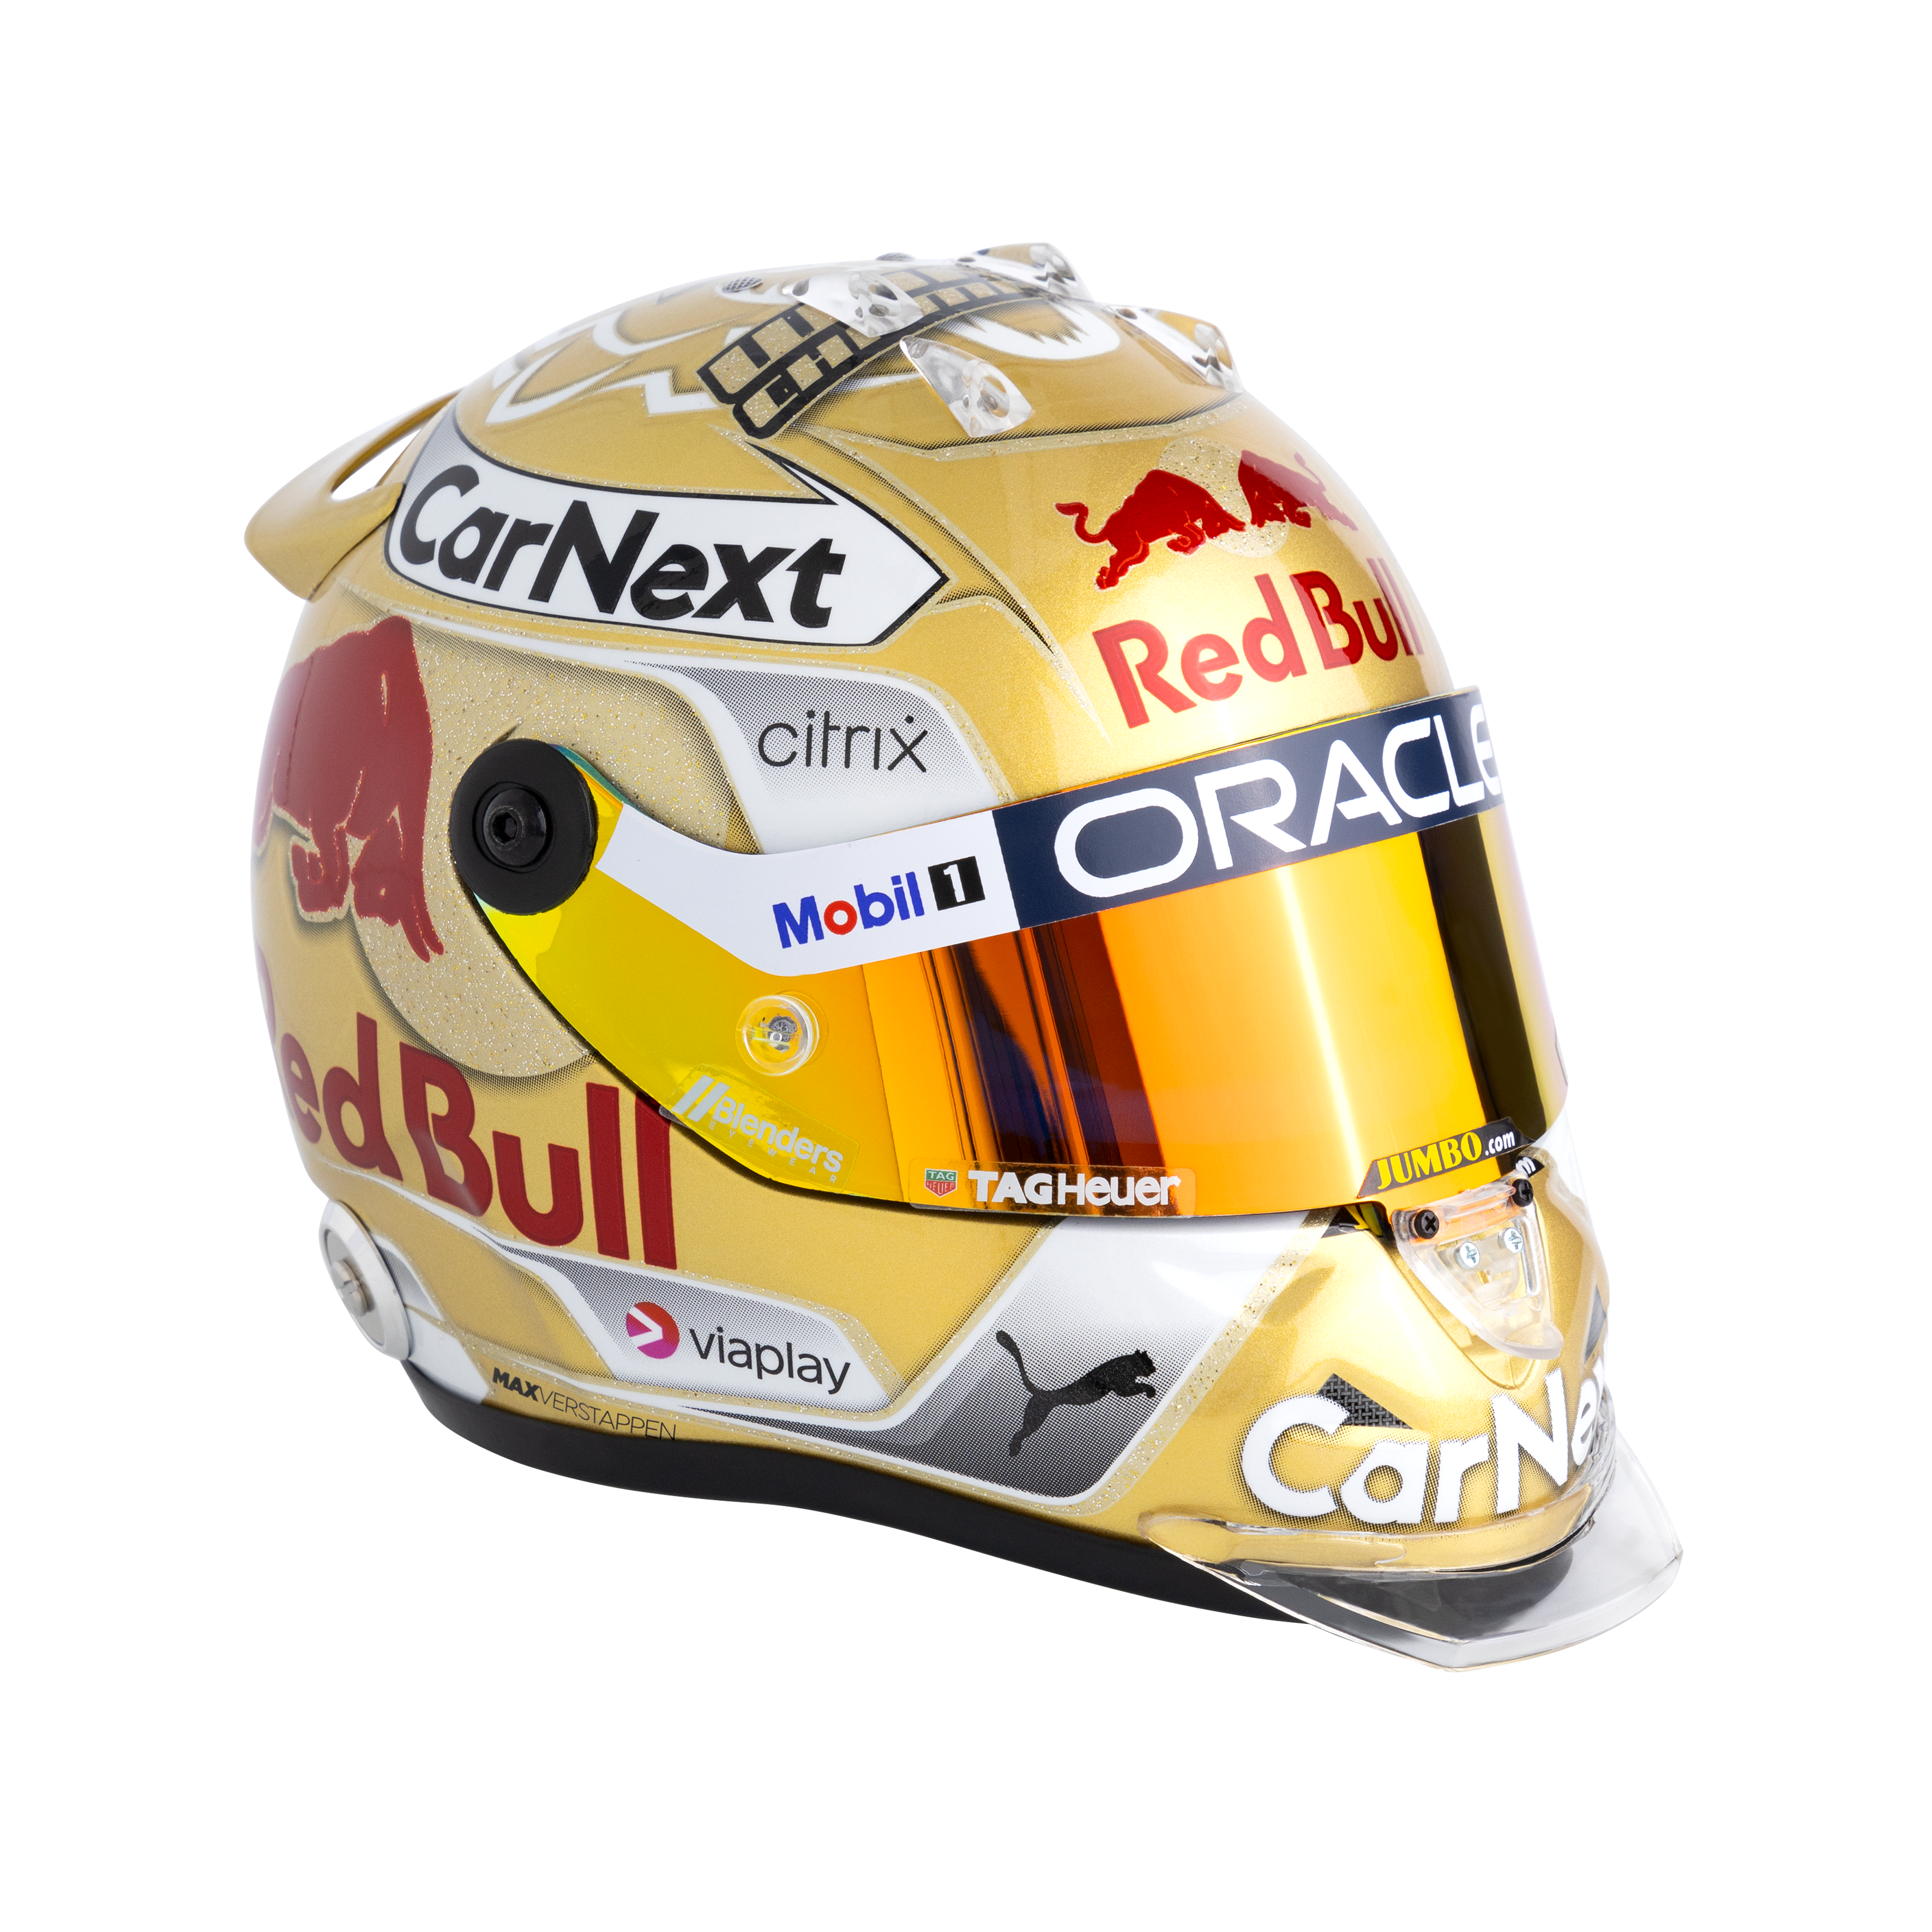 Max Verstappen: les casques iconiques du champion de F1